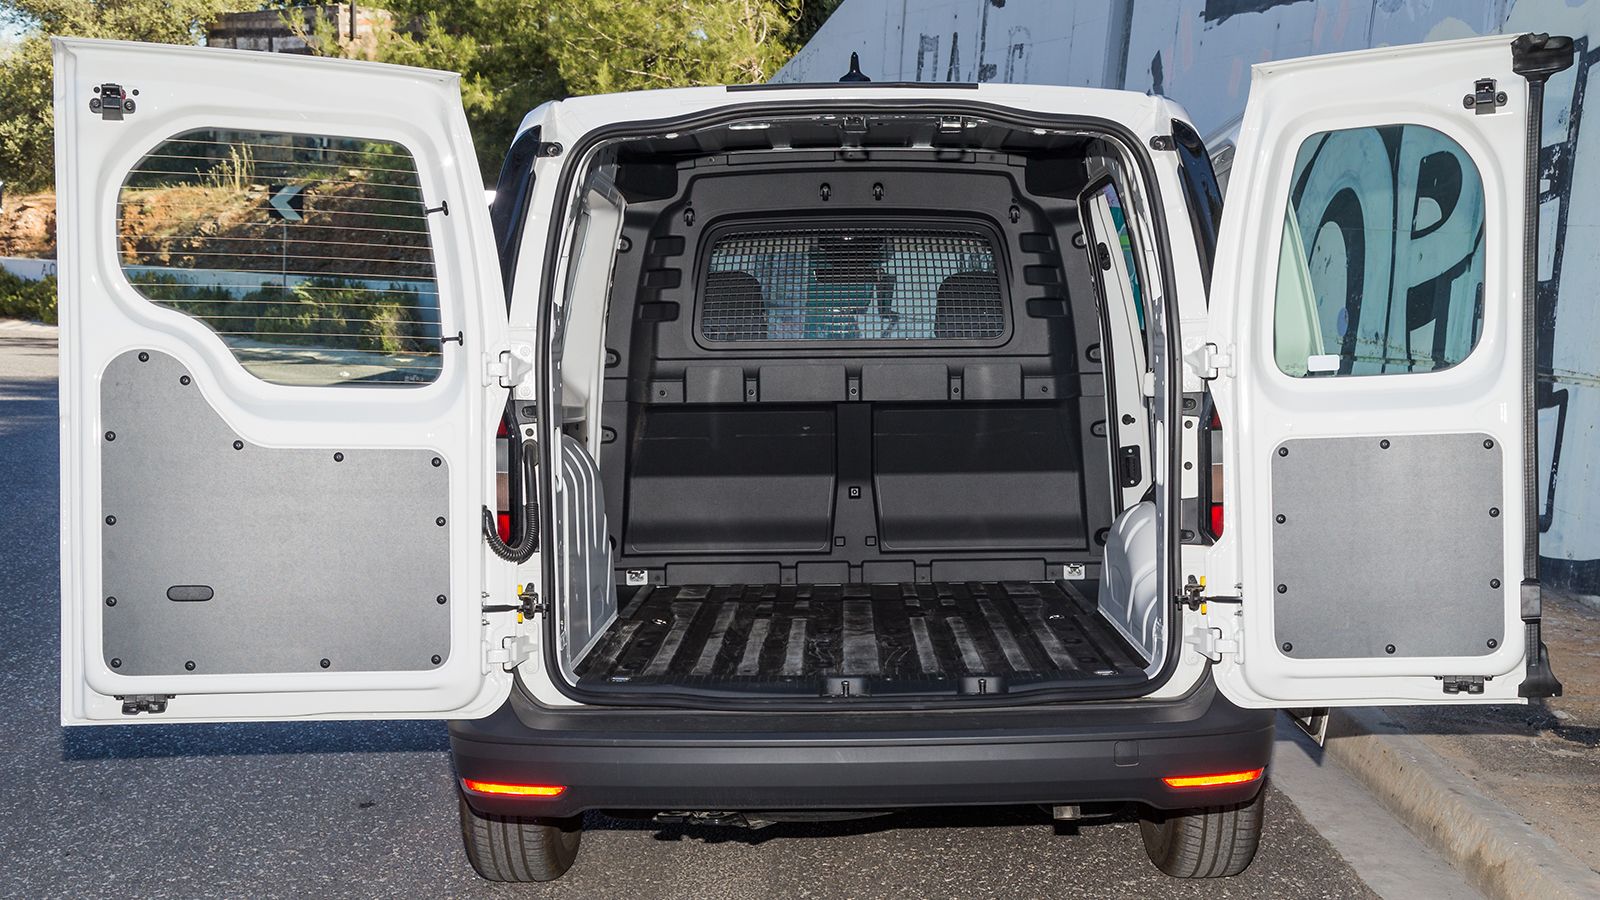 Στις κανονικές εκδόσεις του νέου Caddy Van, ο χώρος φόρτωσης έχει μήκος έως 1,8μ. και ωφέλιμο πλάτος 1,23μ. μεταξύ των θόλων των τροχών.